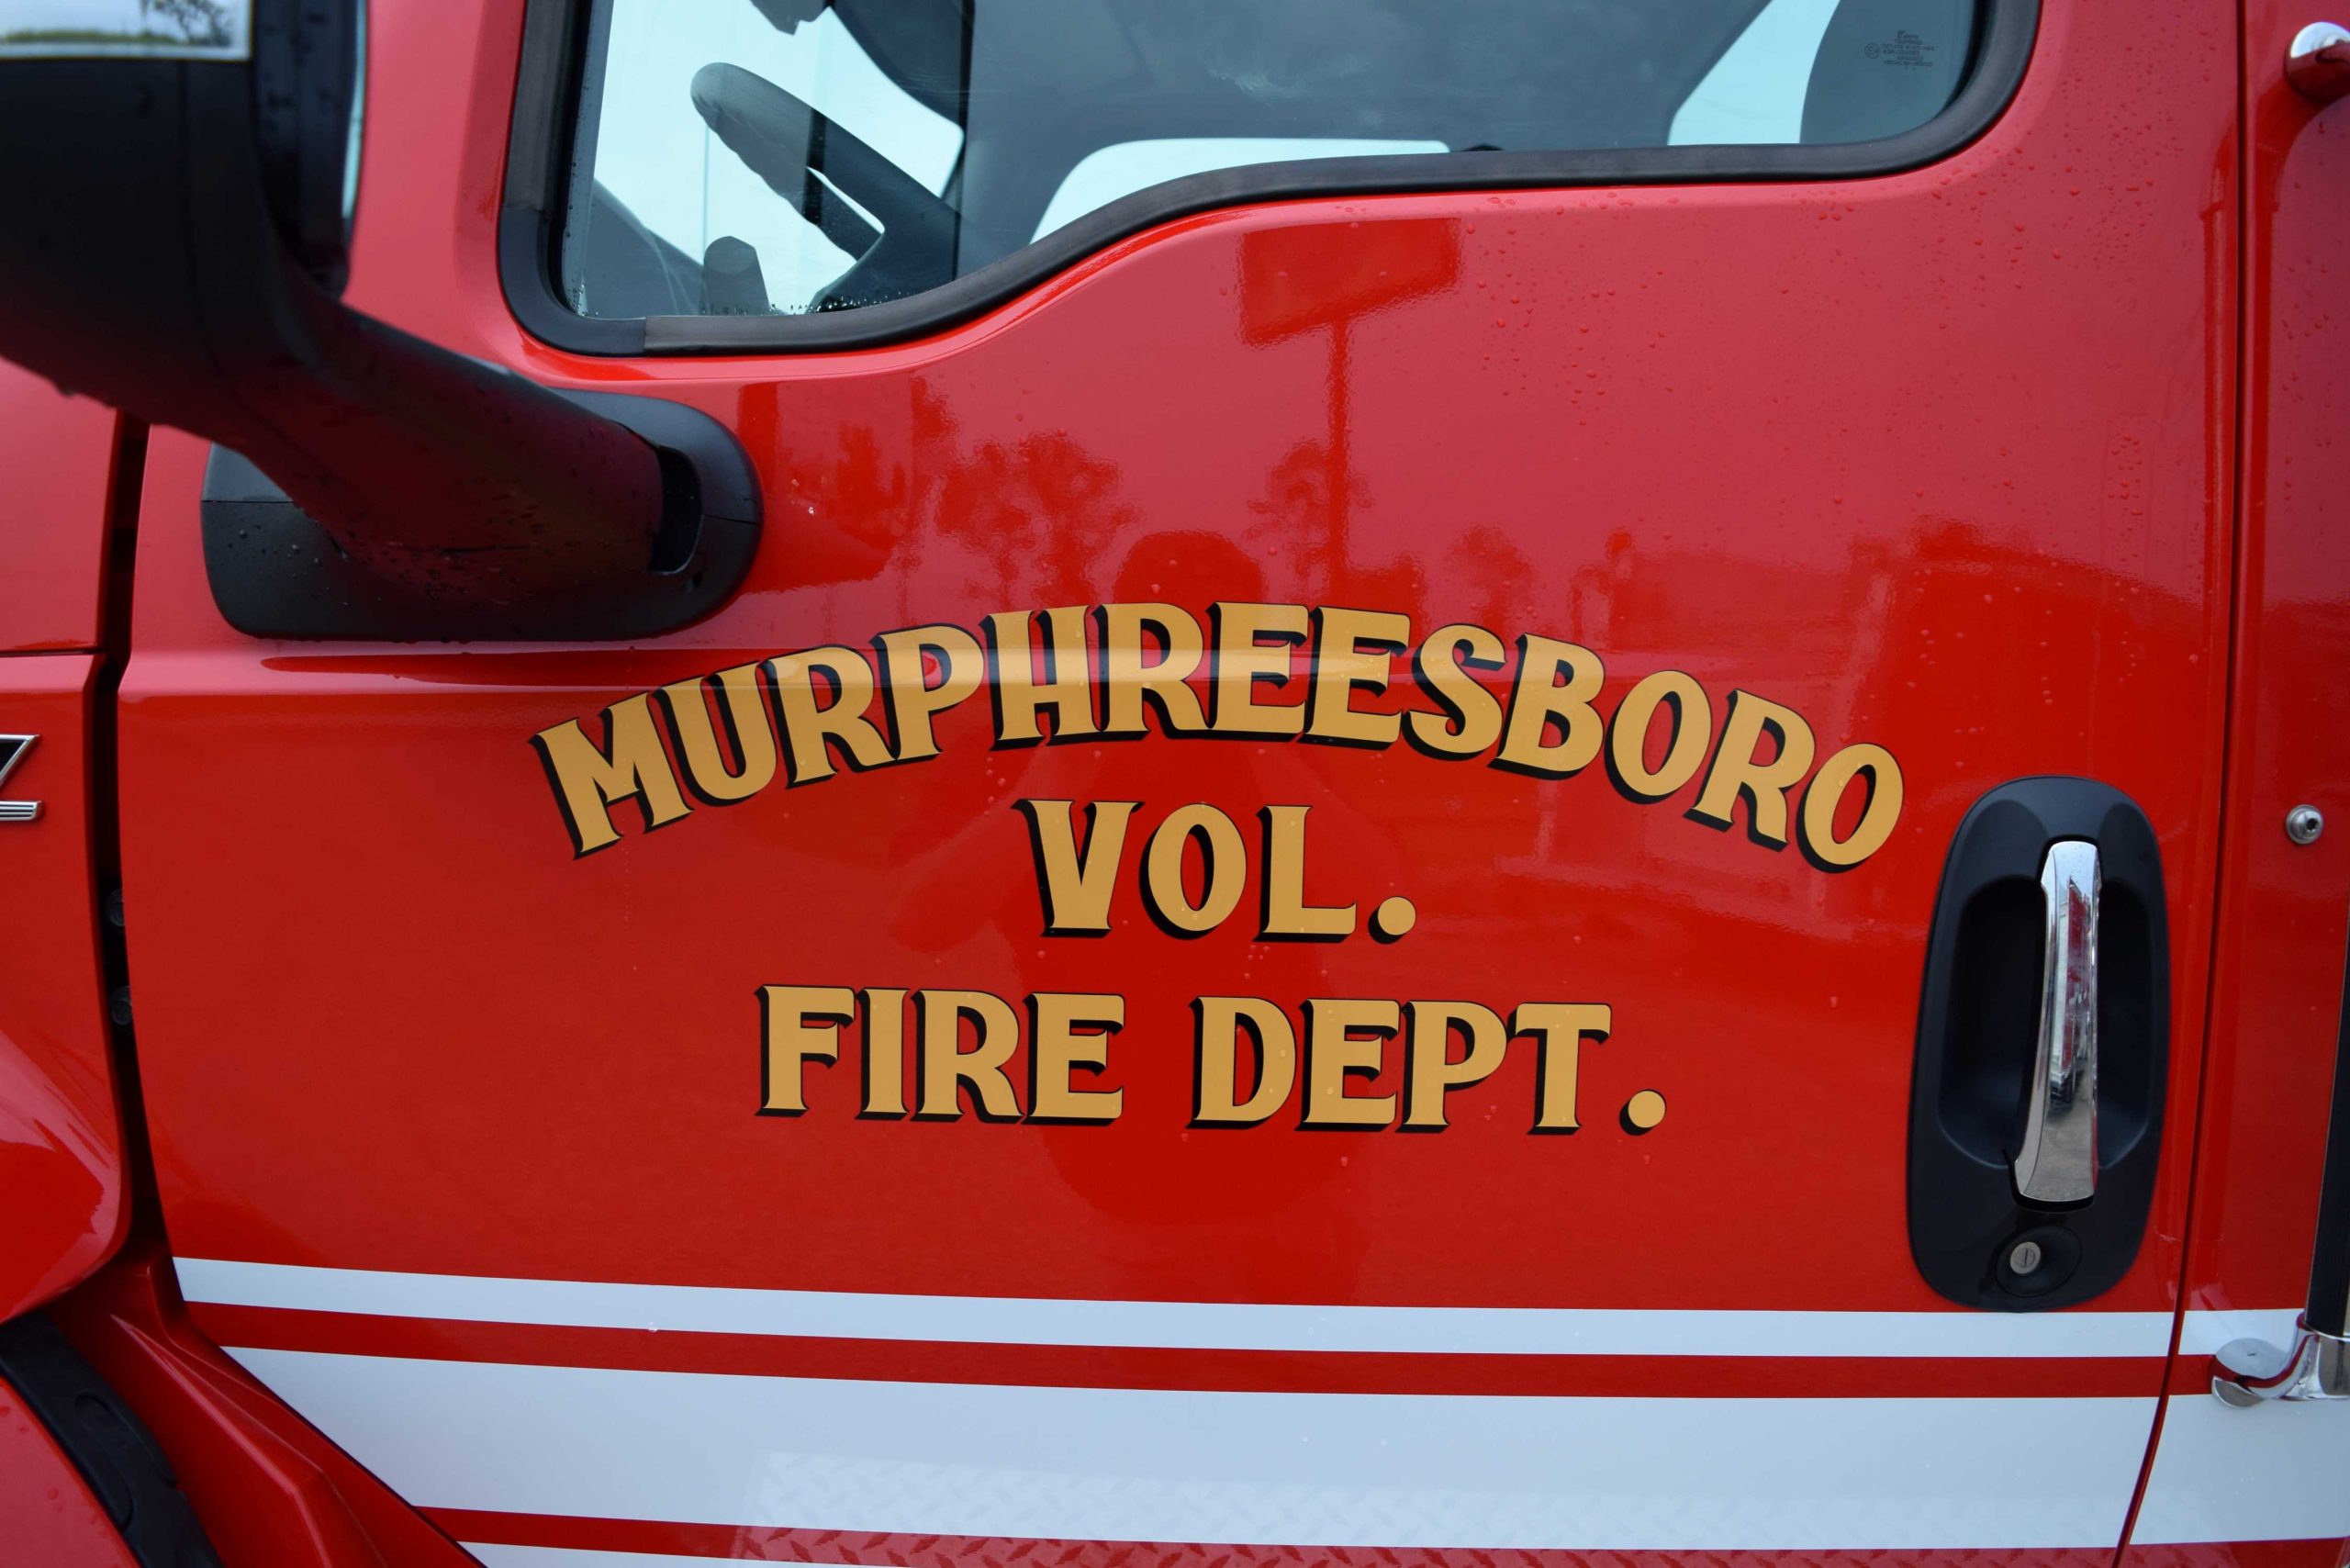 Murphreesboro